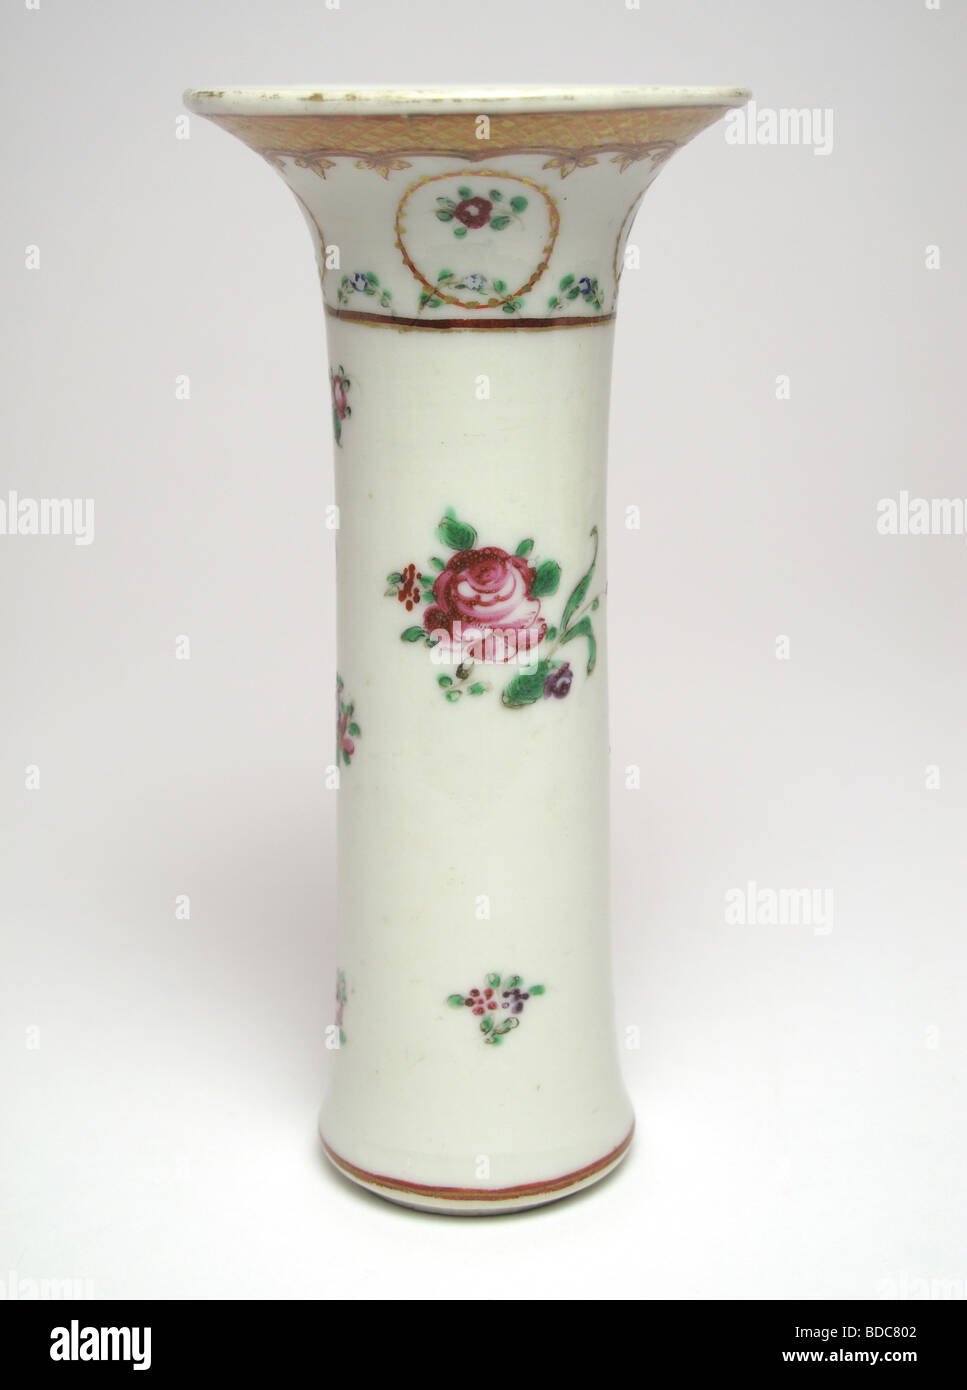 Antique Chinese Porcelain vase Stock Photo